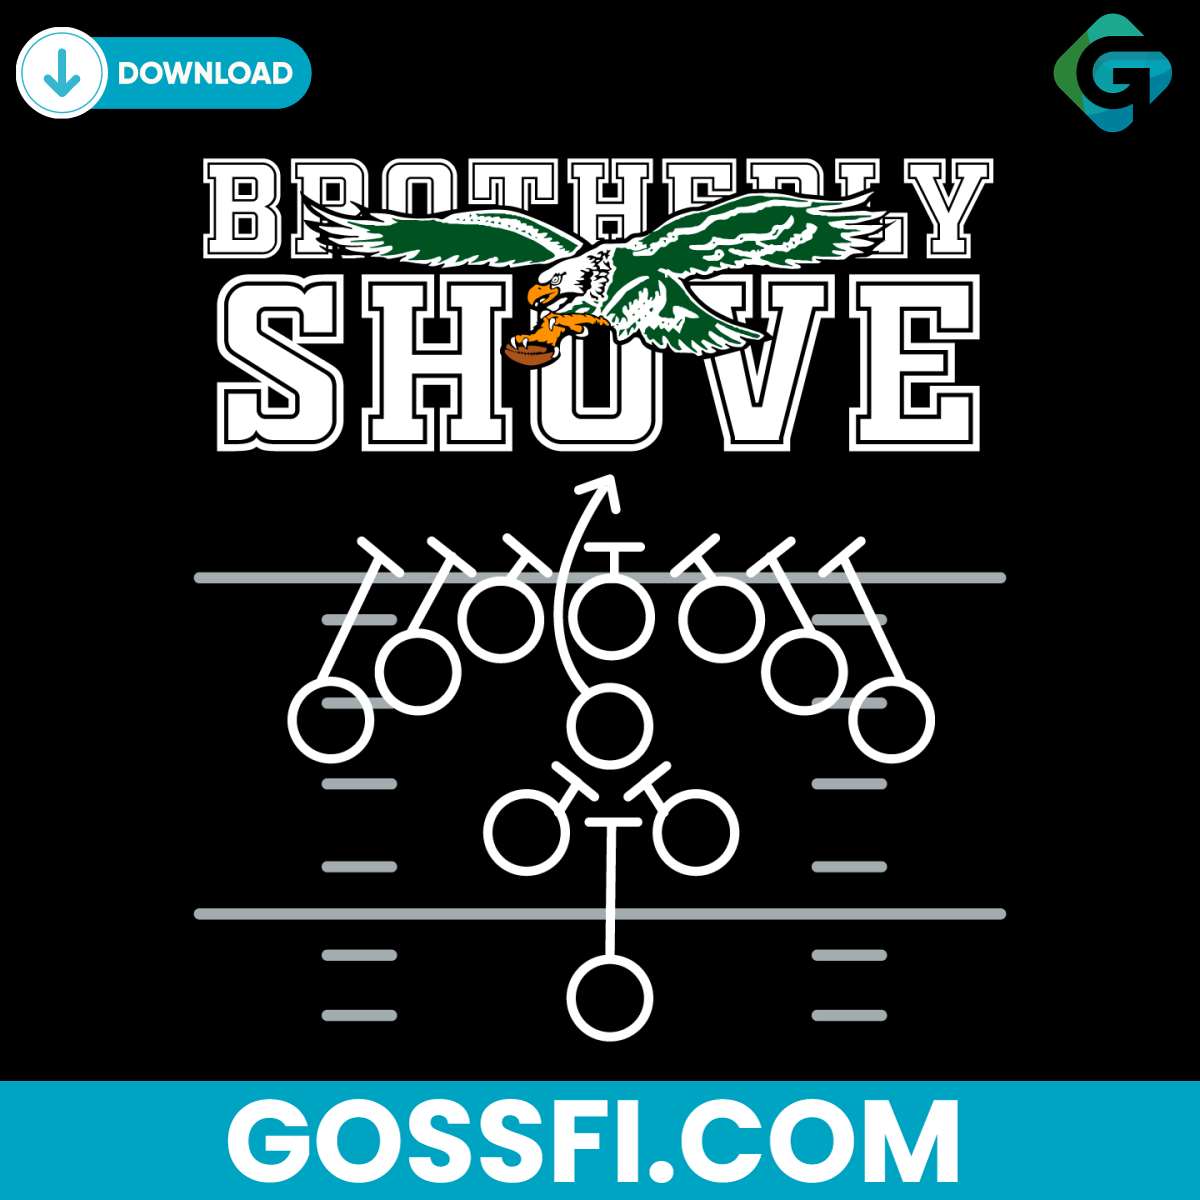 brotherly-shove-tush-push-eagles-football-svg-digital-download